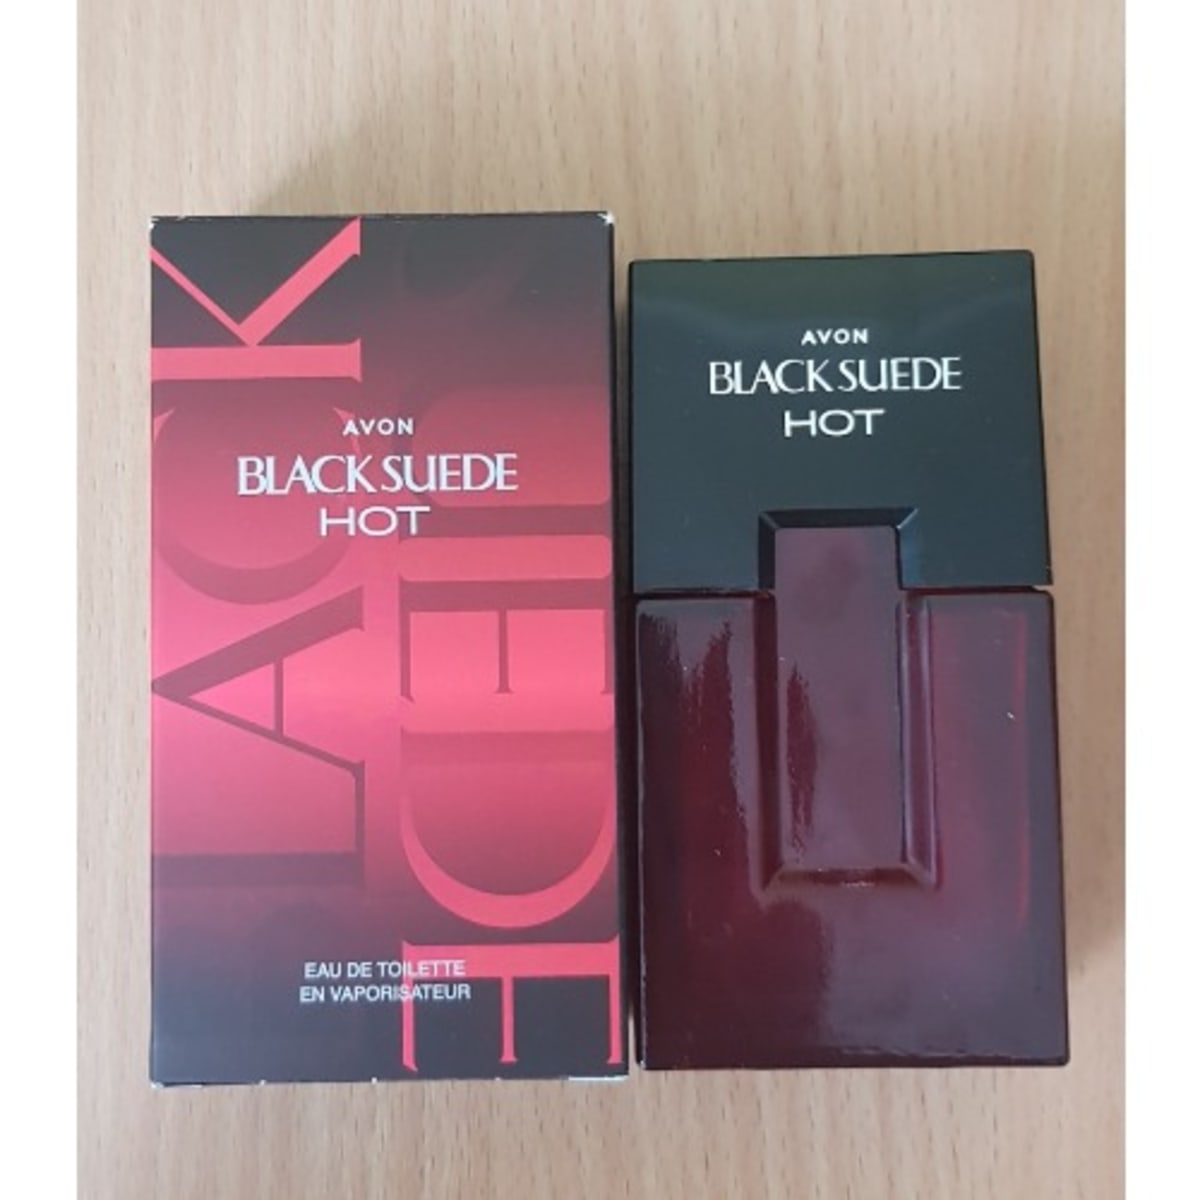 Black Suede Hot Avon cologne - a fragrance for men 2021